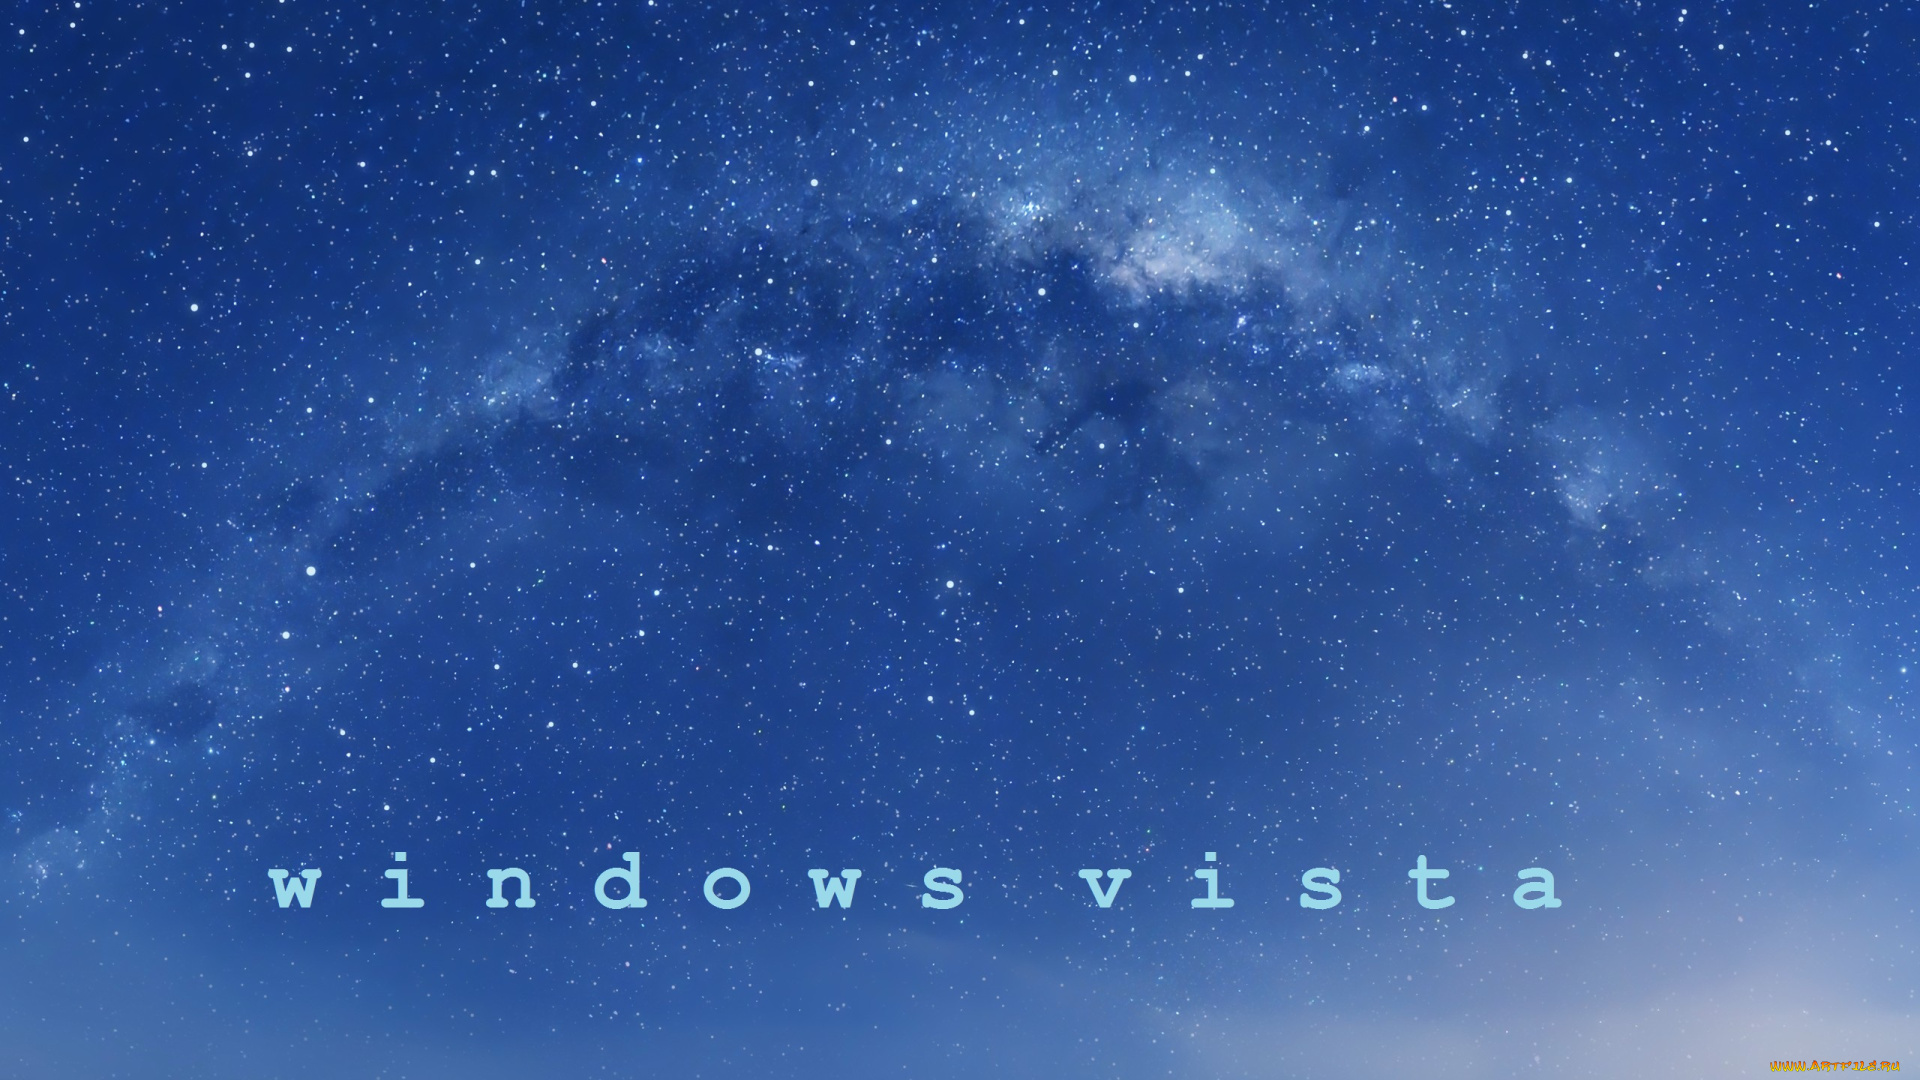 компьютеры, windows, vista, longhorn